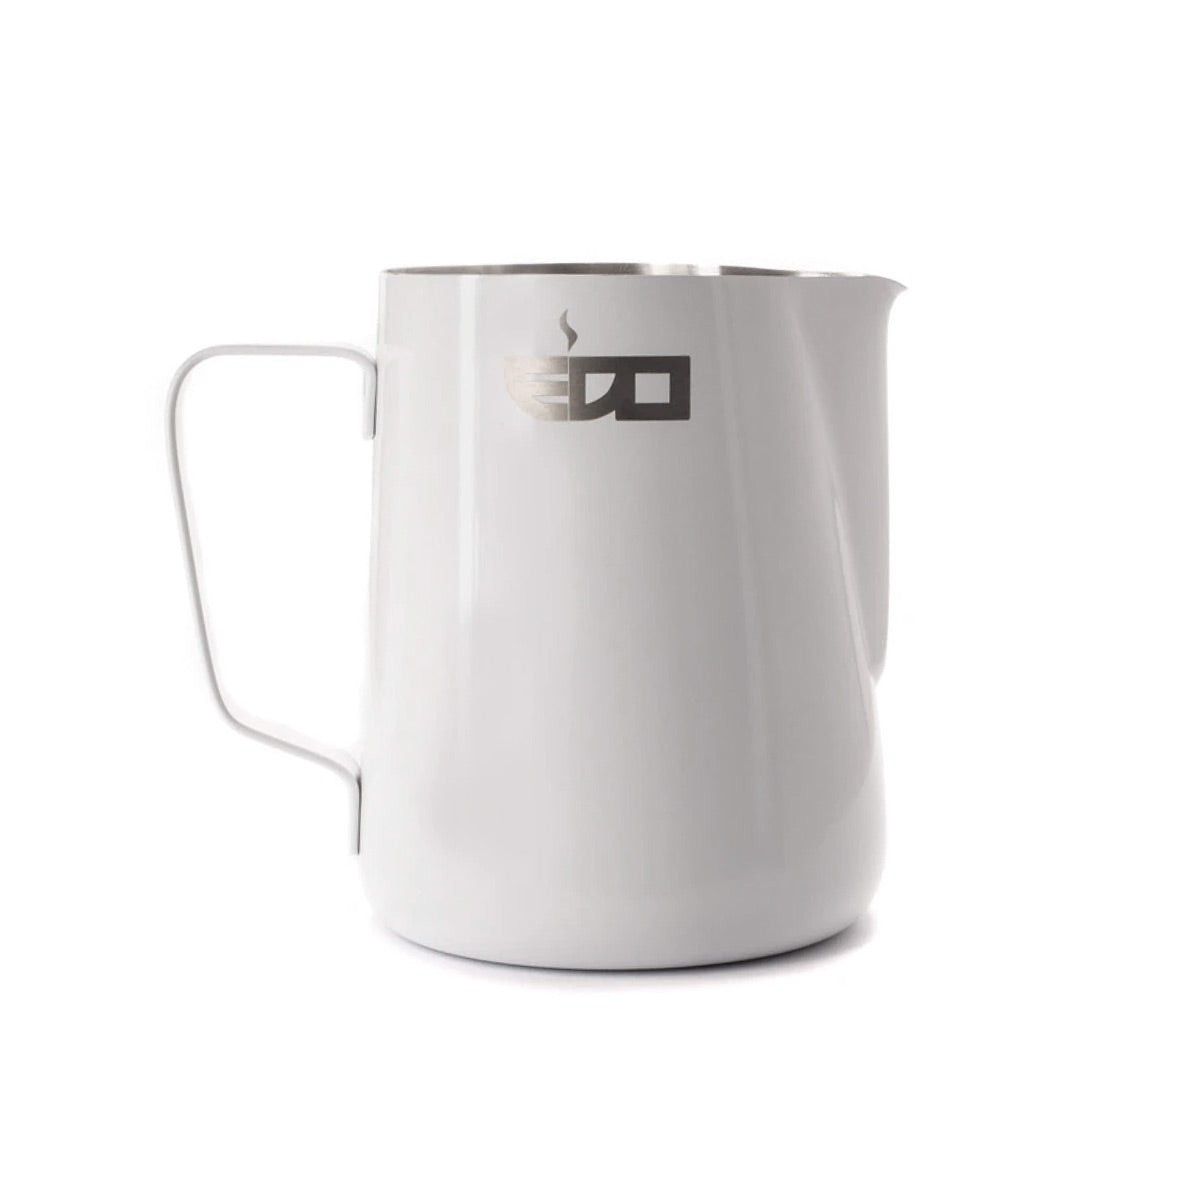 edo-20oz-white-stainless-steel-pitcher